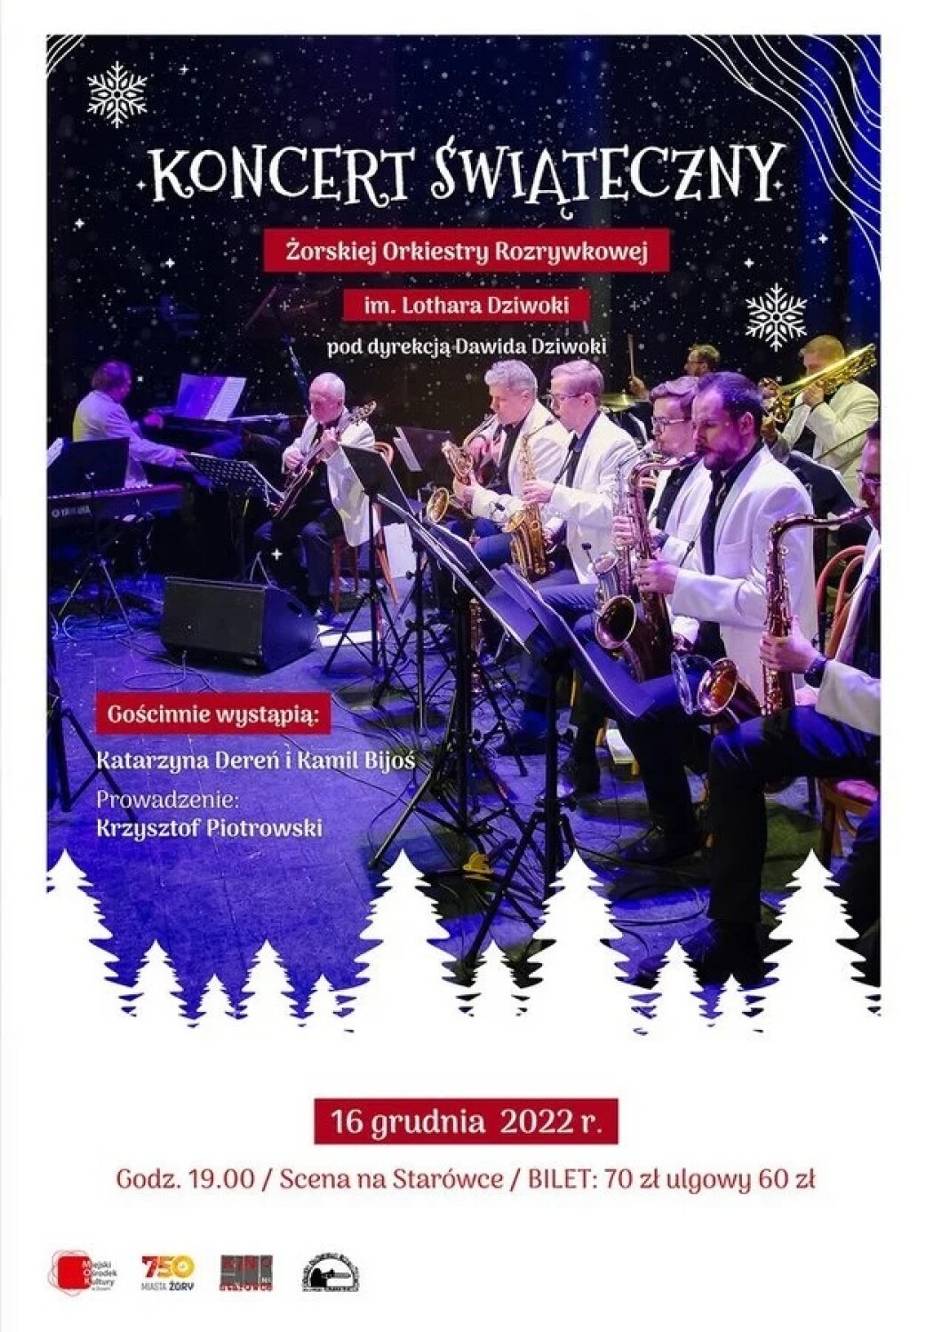 Koncert Świąteczny w Żorach już w grudniu